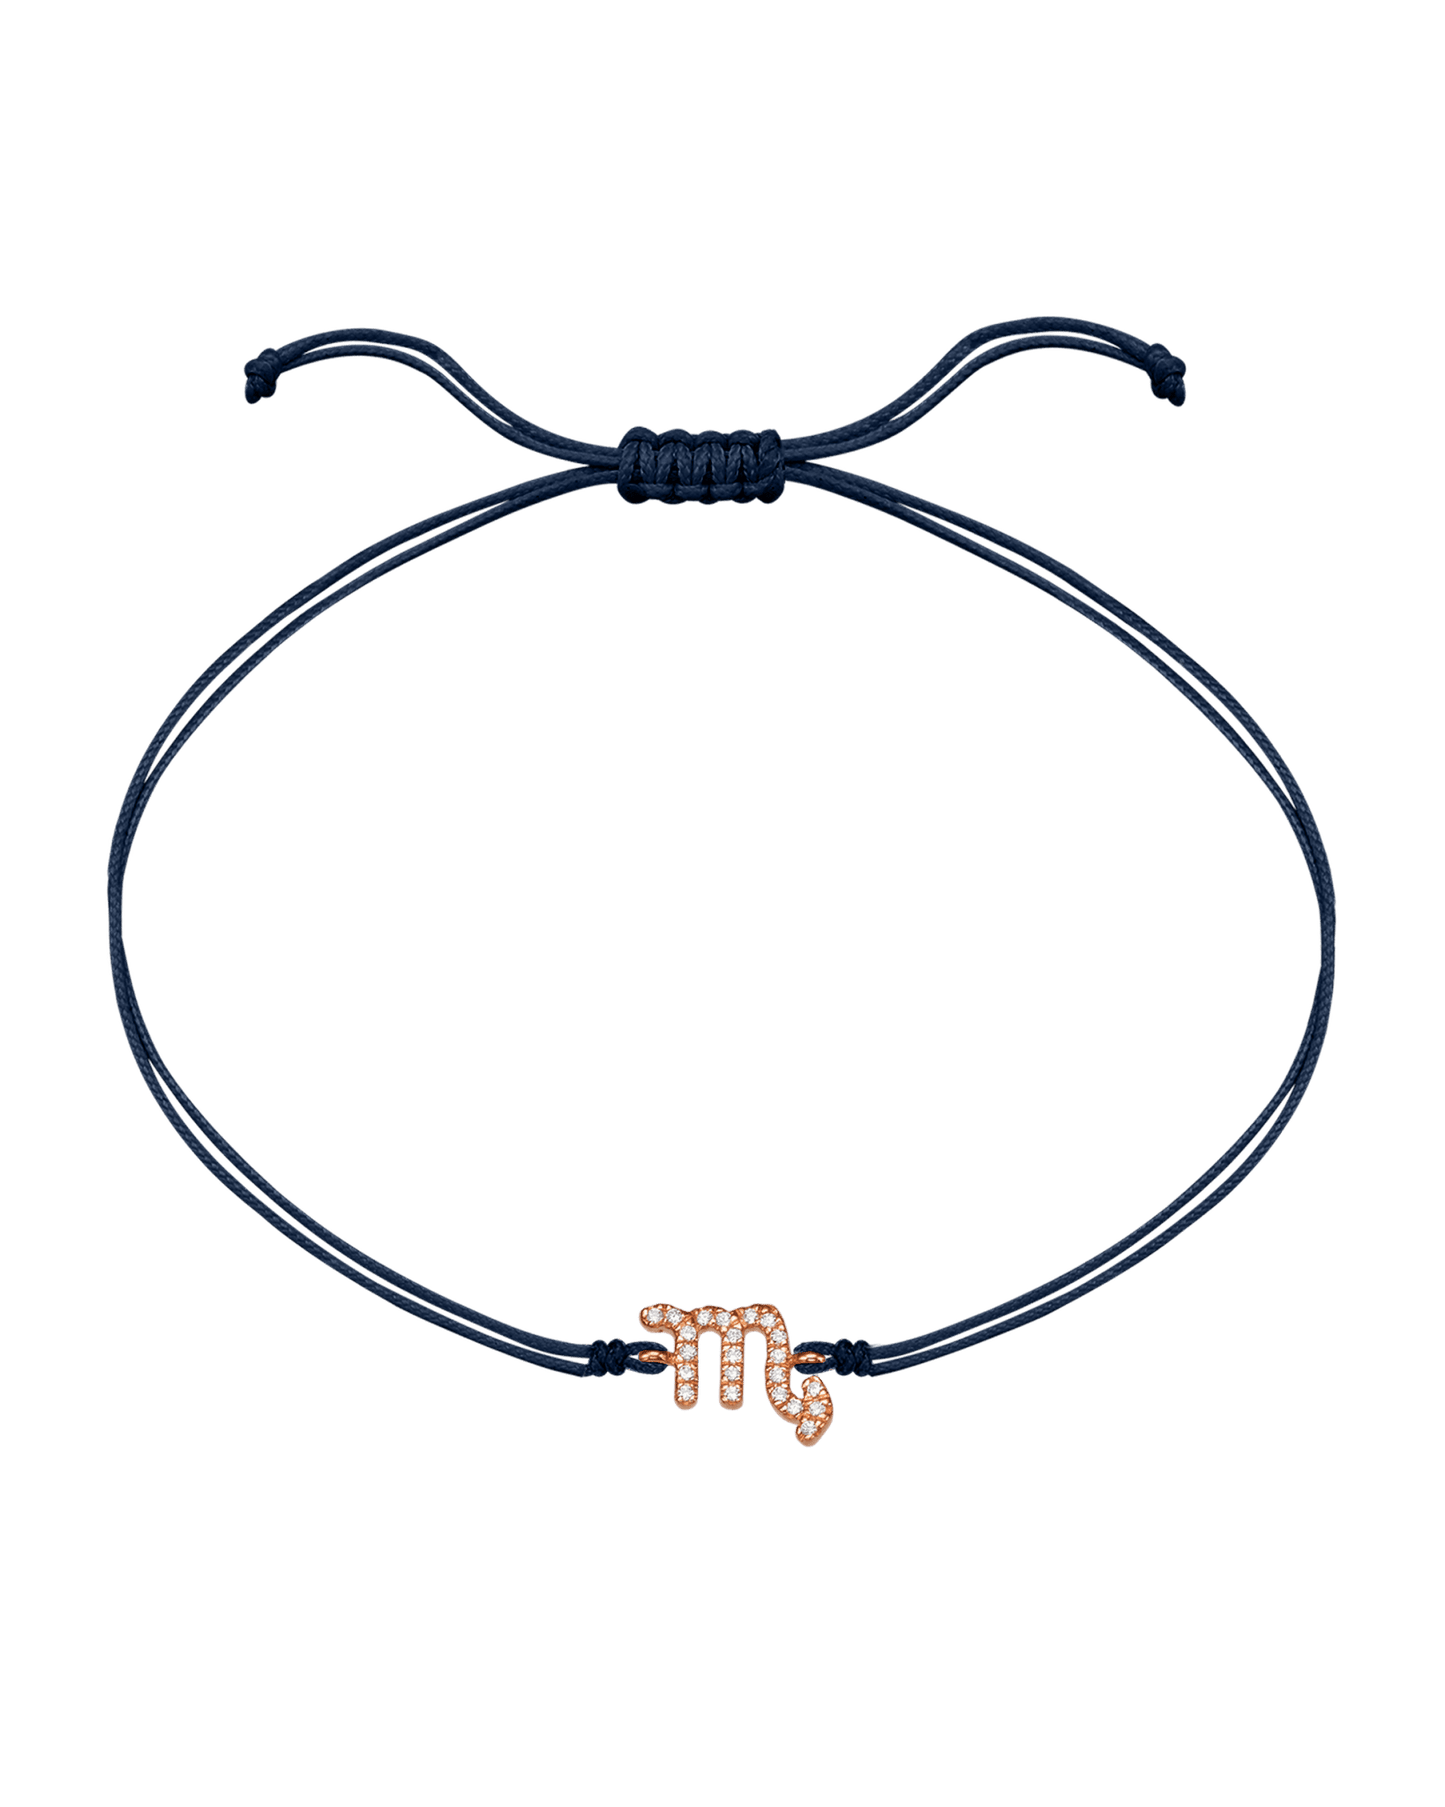 Diamond Zodiac Signs String of Love - 14K Rose Gold Bracelets 14K Solid Gold Navy Blue 